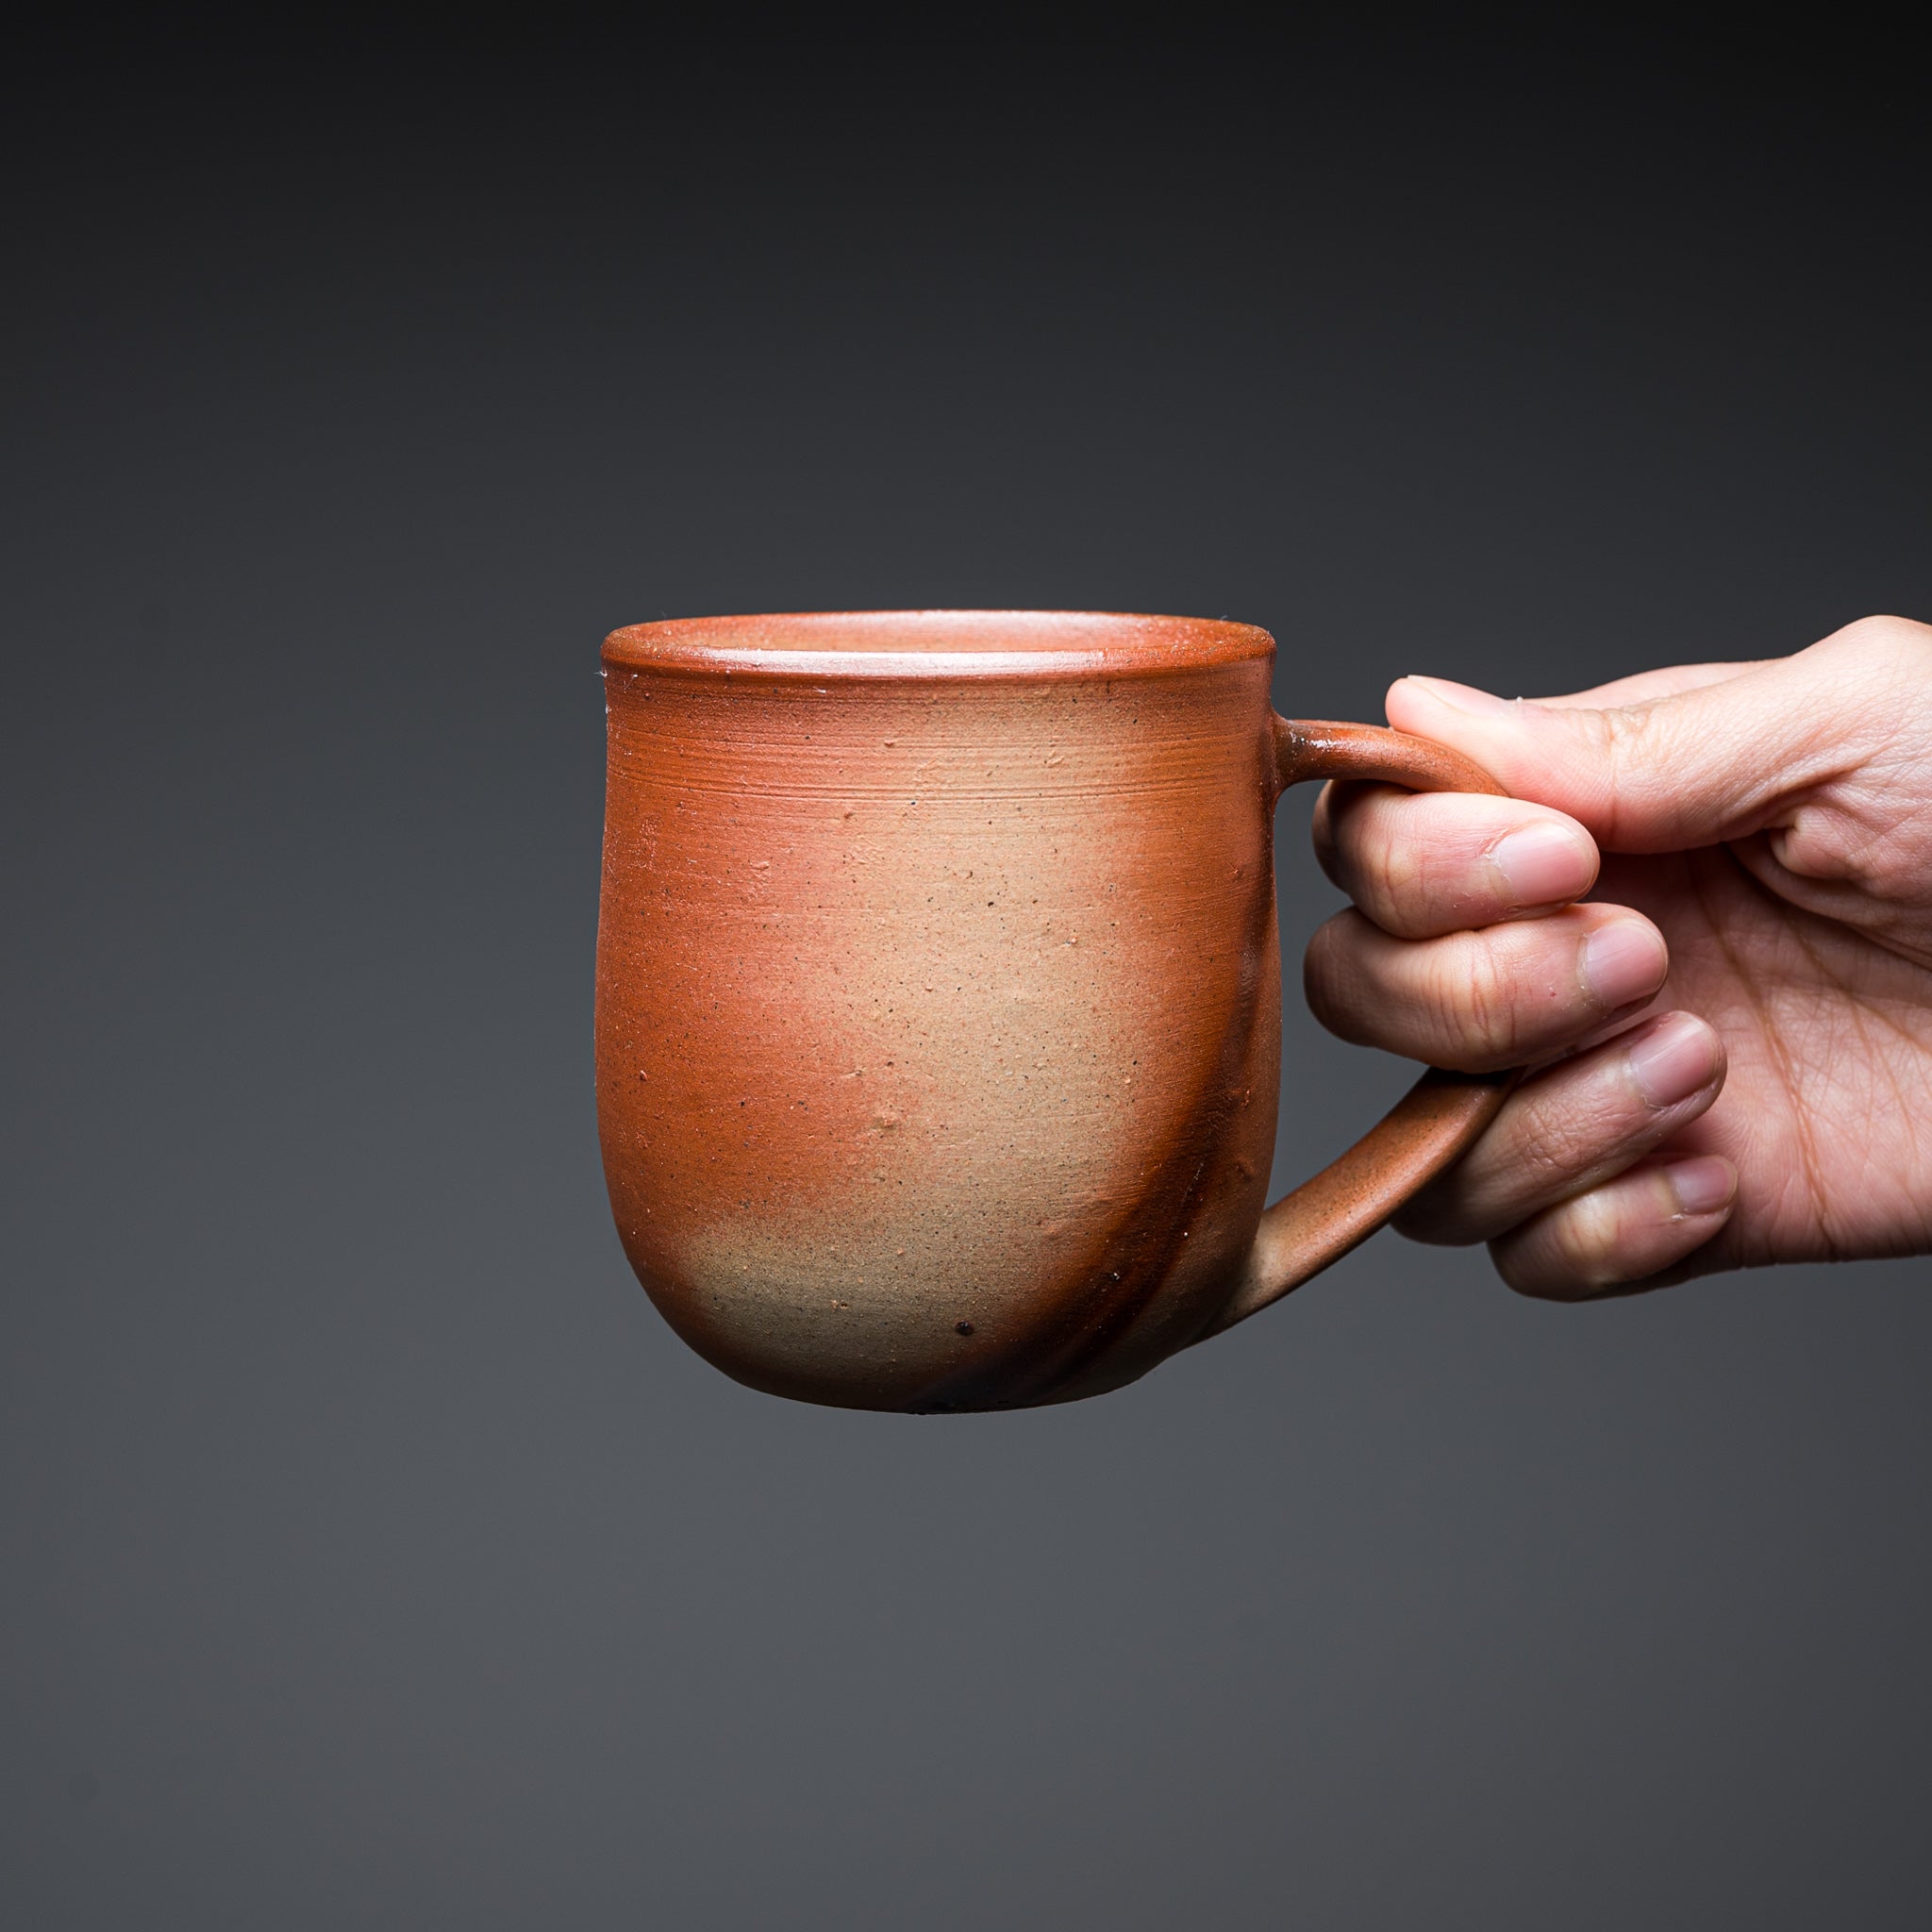 Bizen Pottery Regular Mug Cup - White Hidasuki / 備前焼 マグカップ